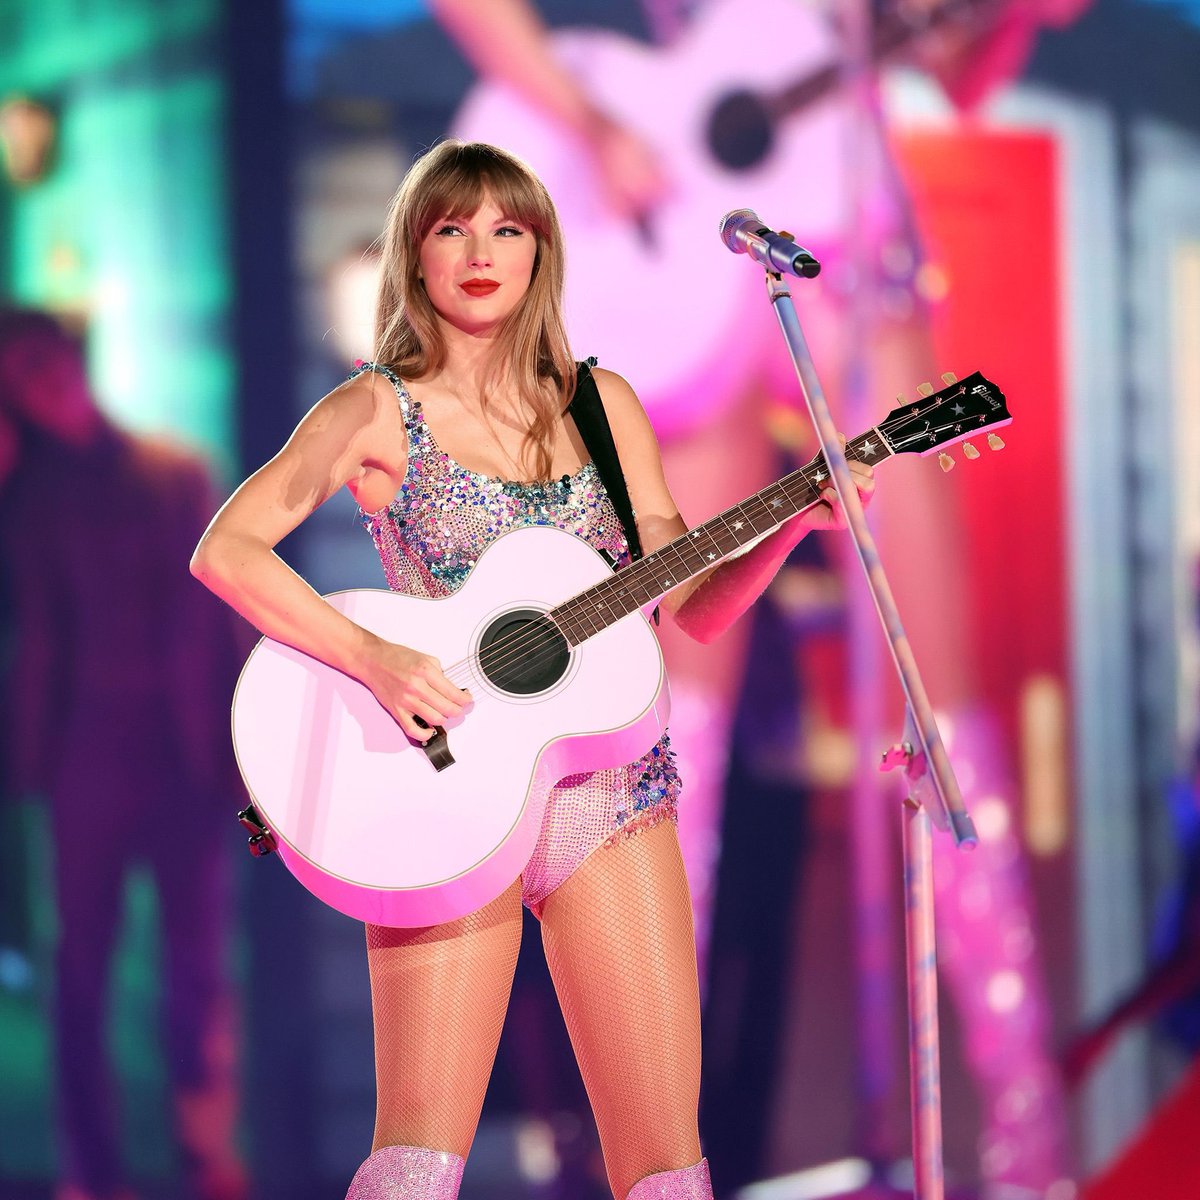 #ULTIMAHORA Según reportes Taylor Swift ya se encuentra en México, previo a los conciertos del 24 al 27 de agosto de #TheErasTour en Foro Sol Más en: bit.ly/43W3xDI